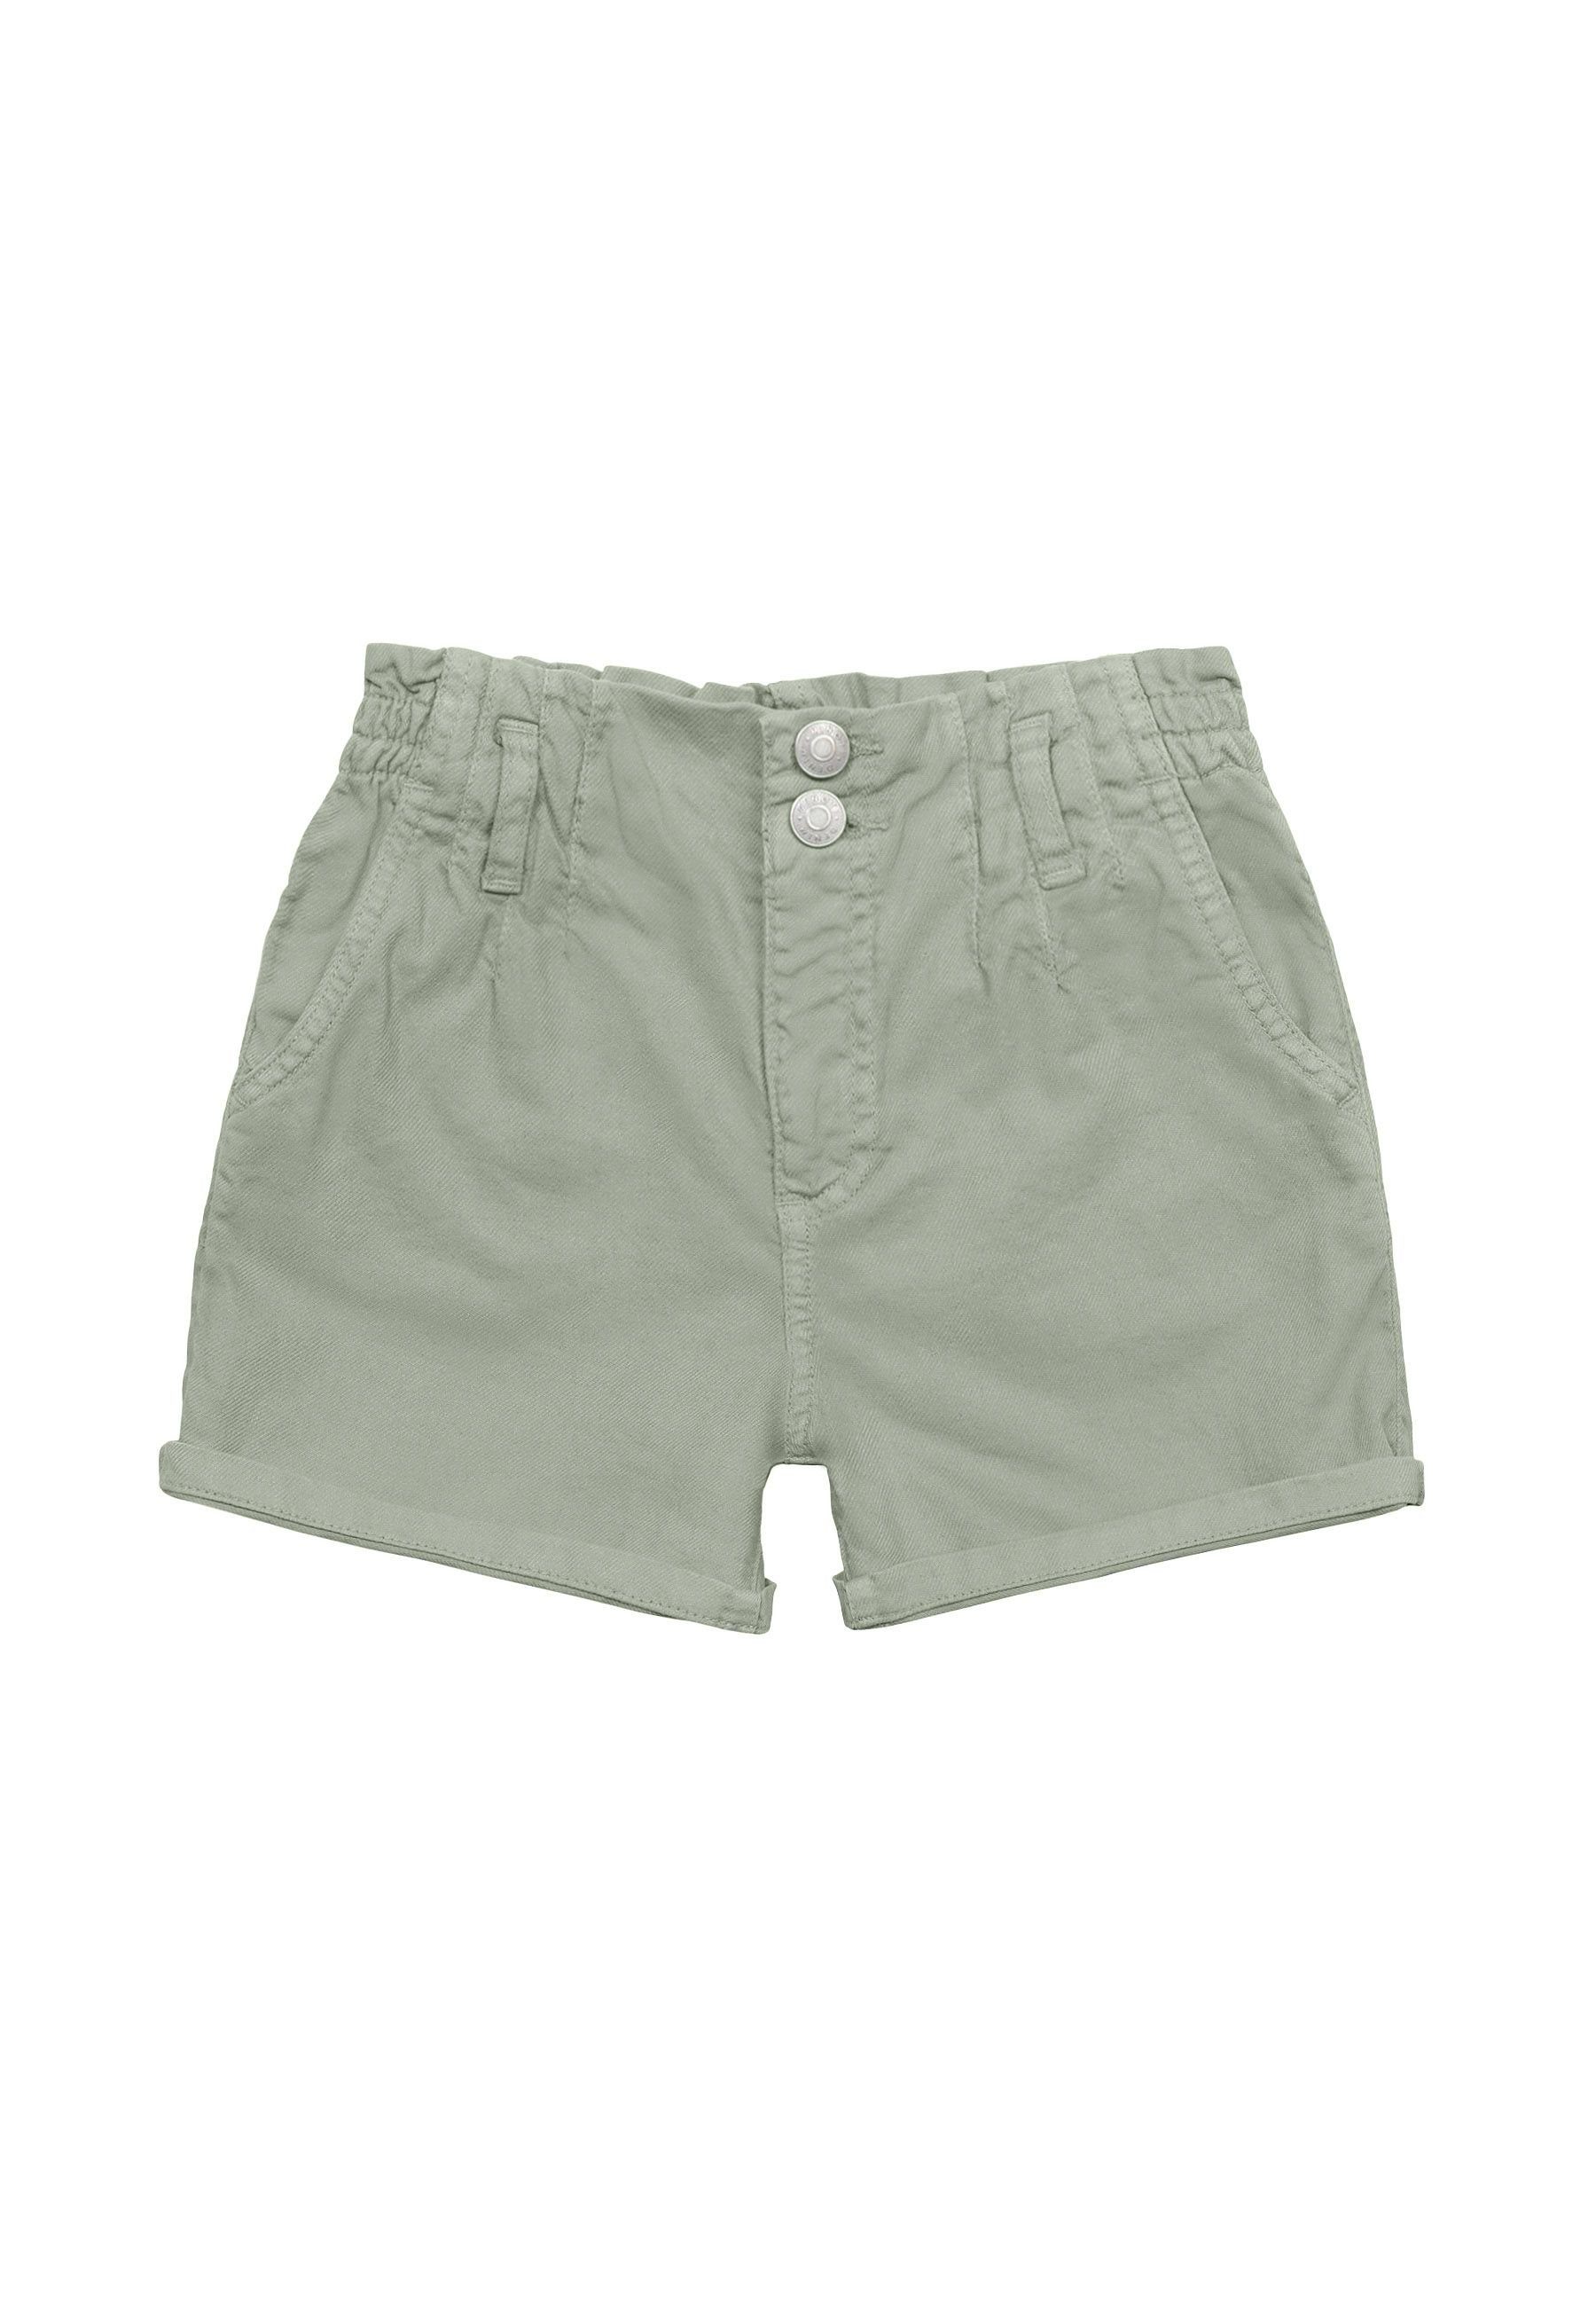 MINOTI Webshorts Shorts (1y-14y)